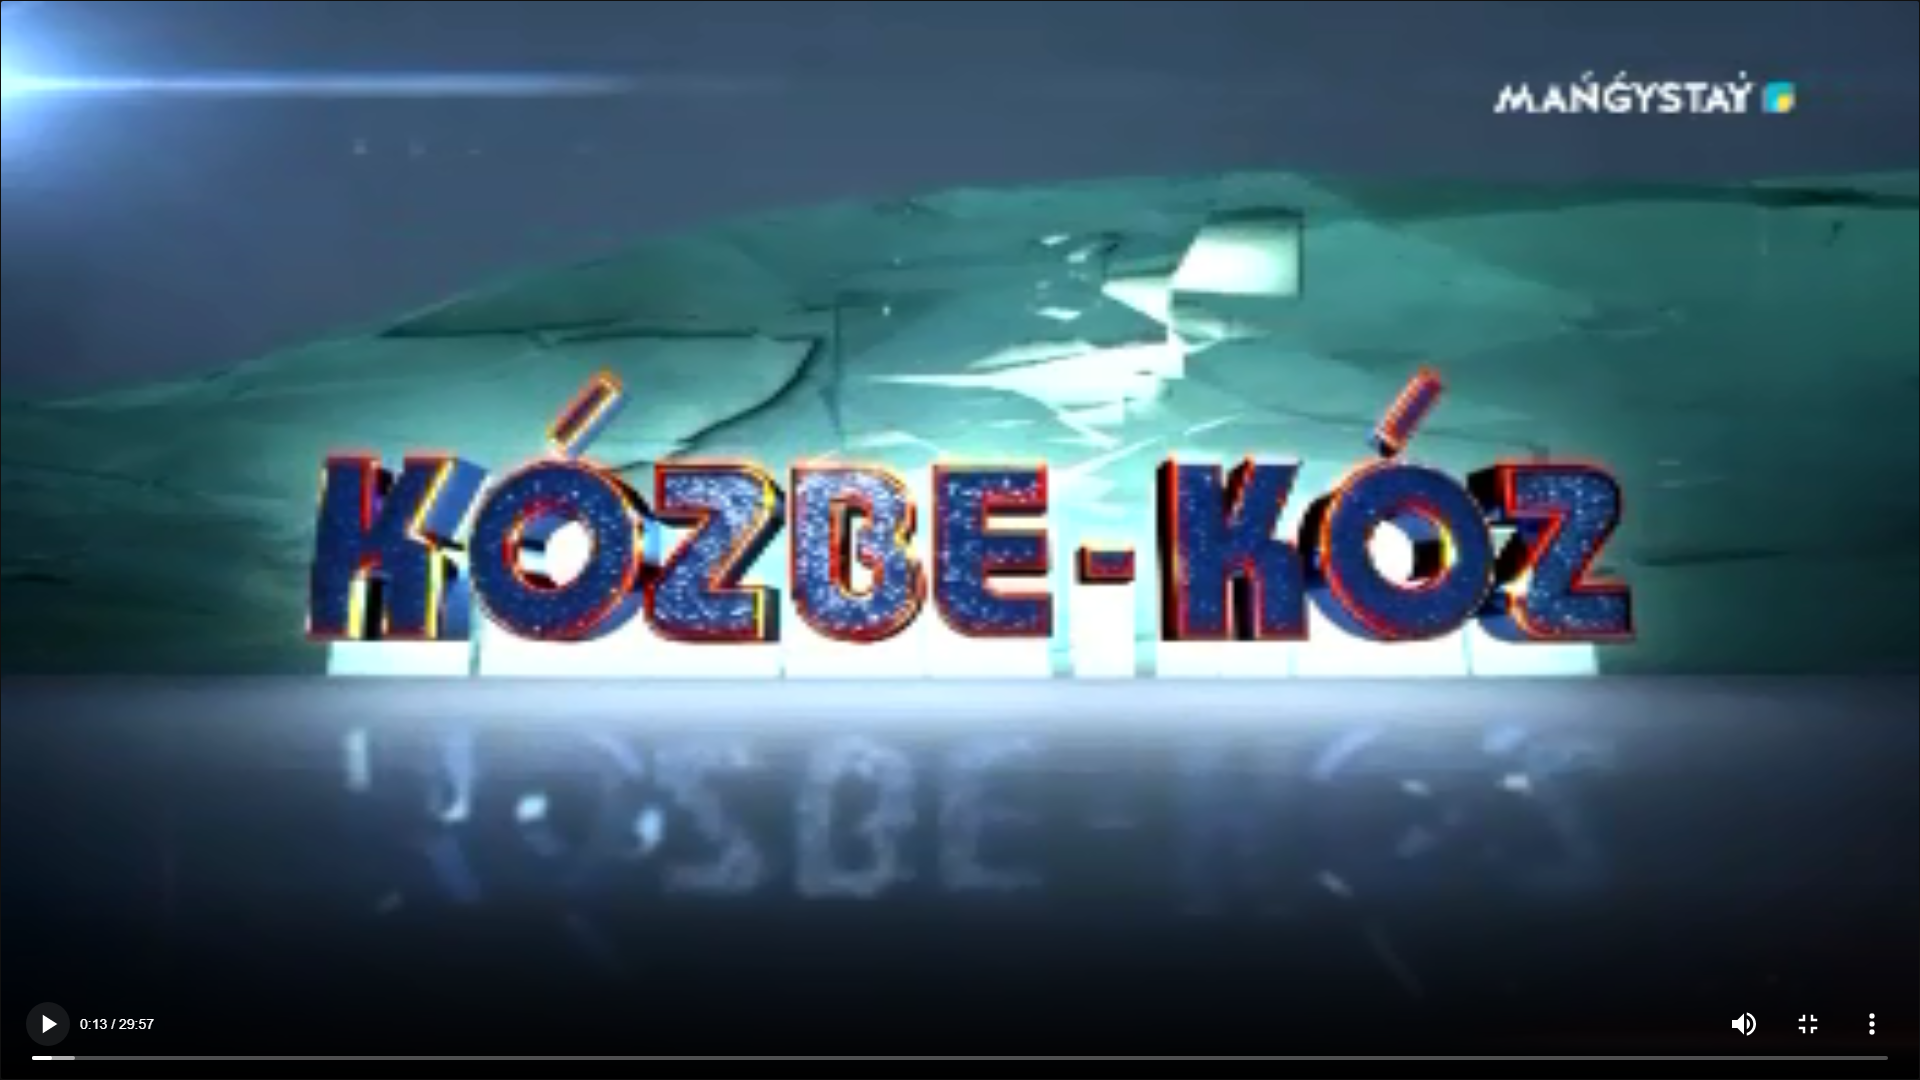 Program "Kөzbe-kөz" No. 2